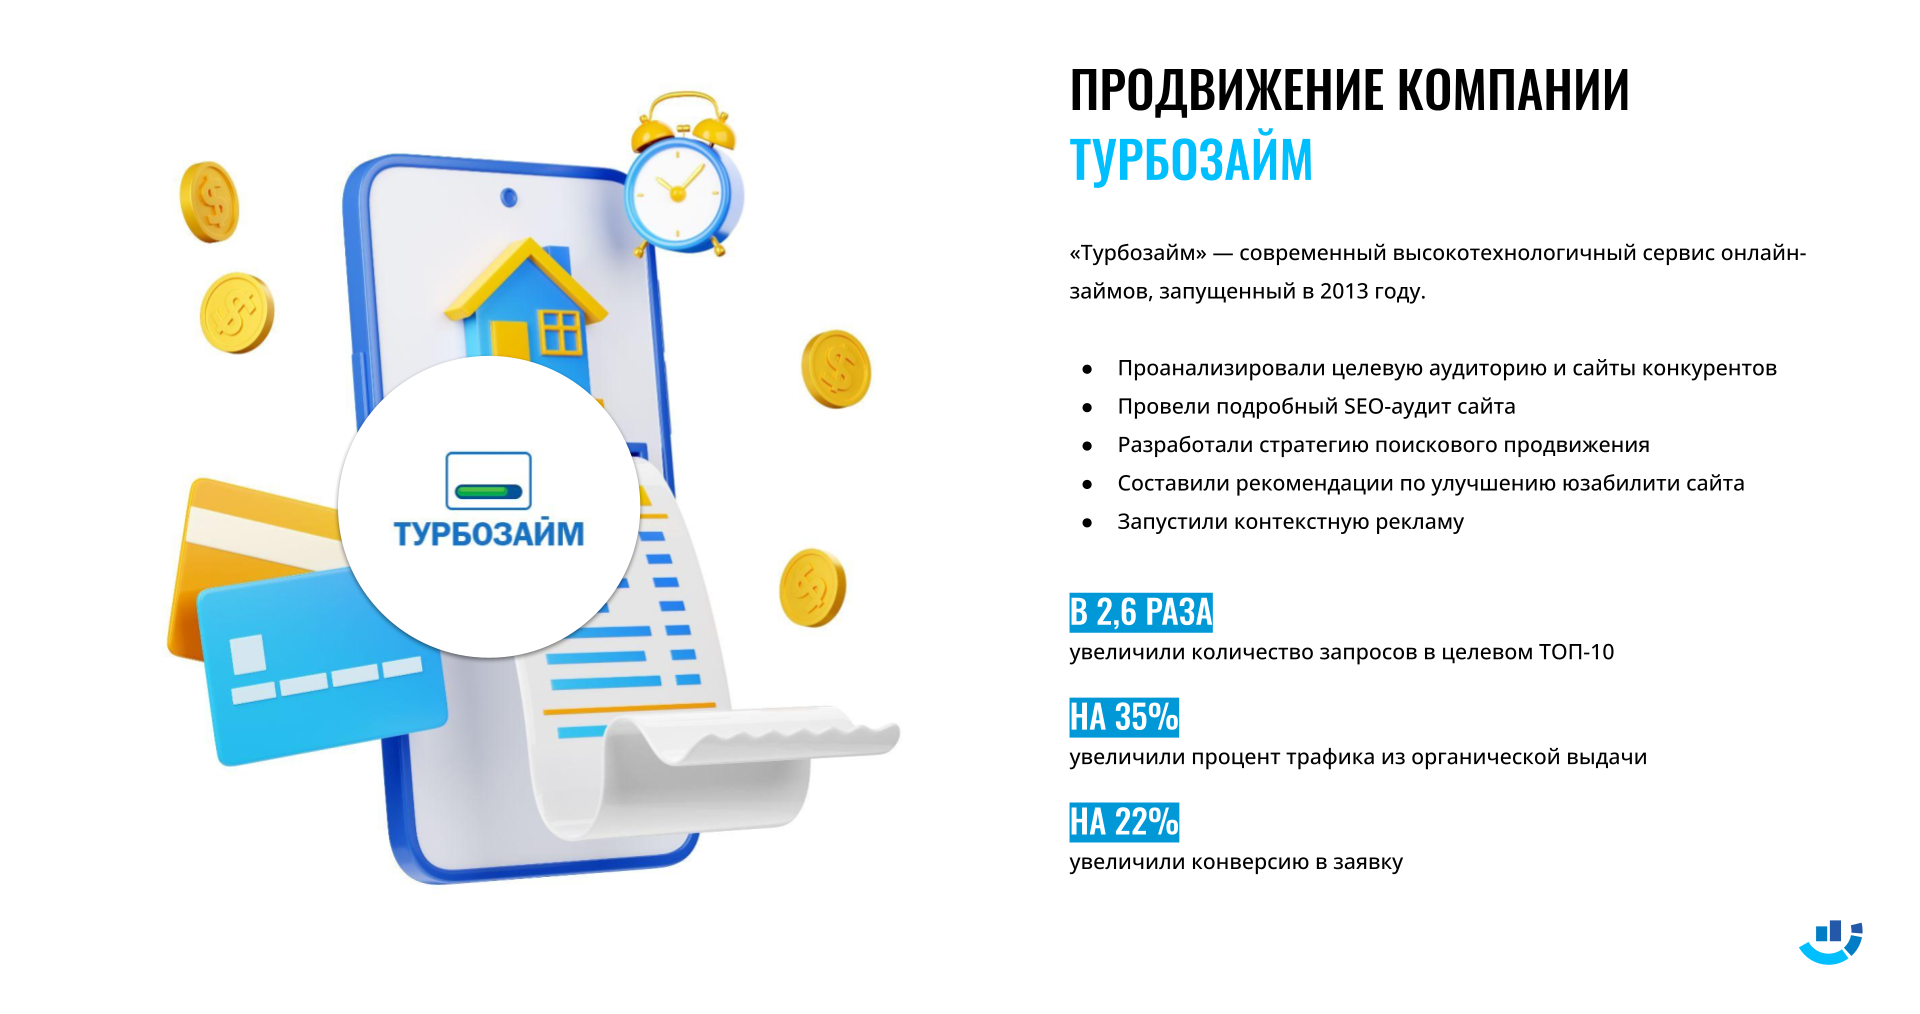 [Кейс] Займы. Продвижение компании Турбозайм.ru